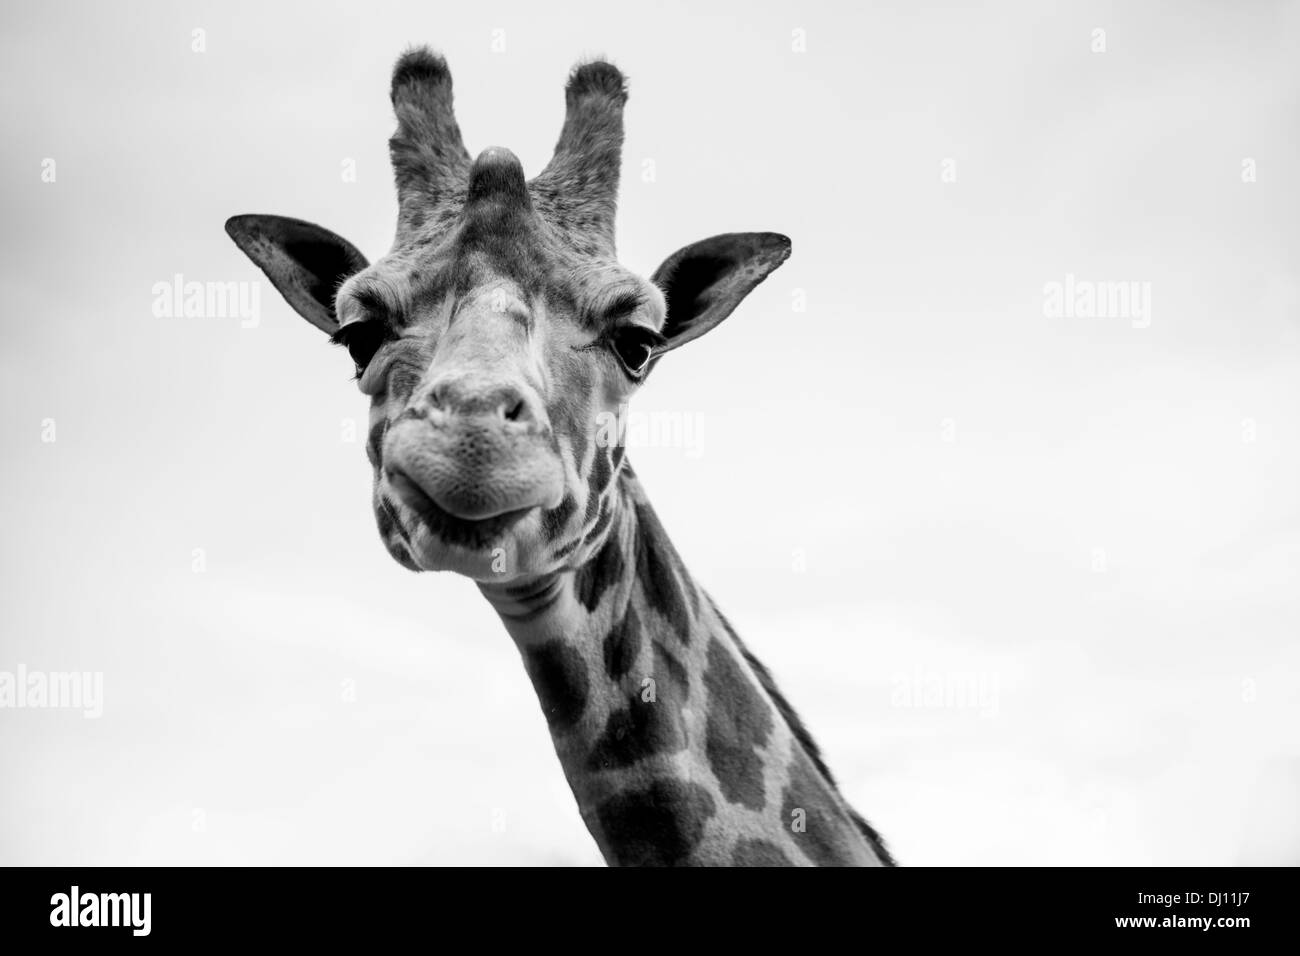 A single giraffe portrait in black and white Stock Photo